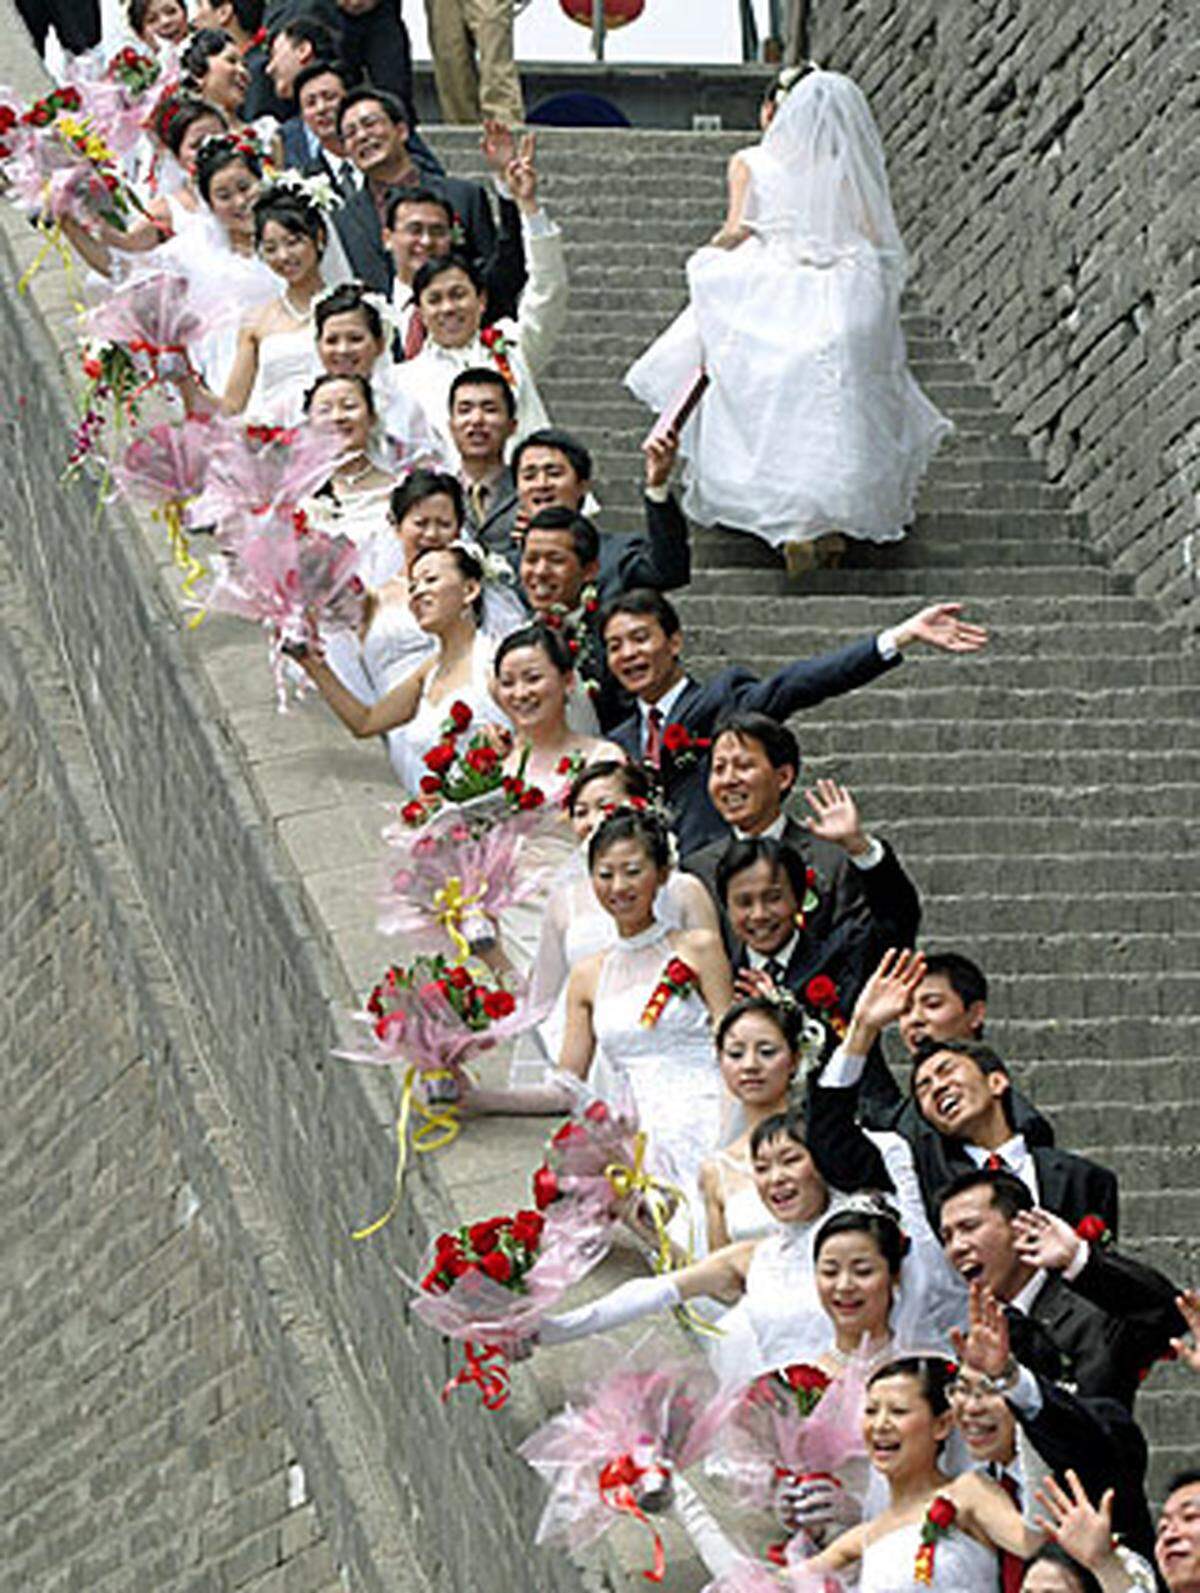 In der chinesischen Provinz Shaanxi sagten 30 Paare "ai" zueinander. Als Ort wählten sie die am besten erhaltenste Stelle der Chinesischen Mauer.